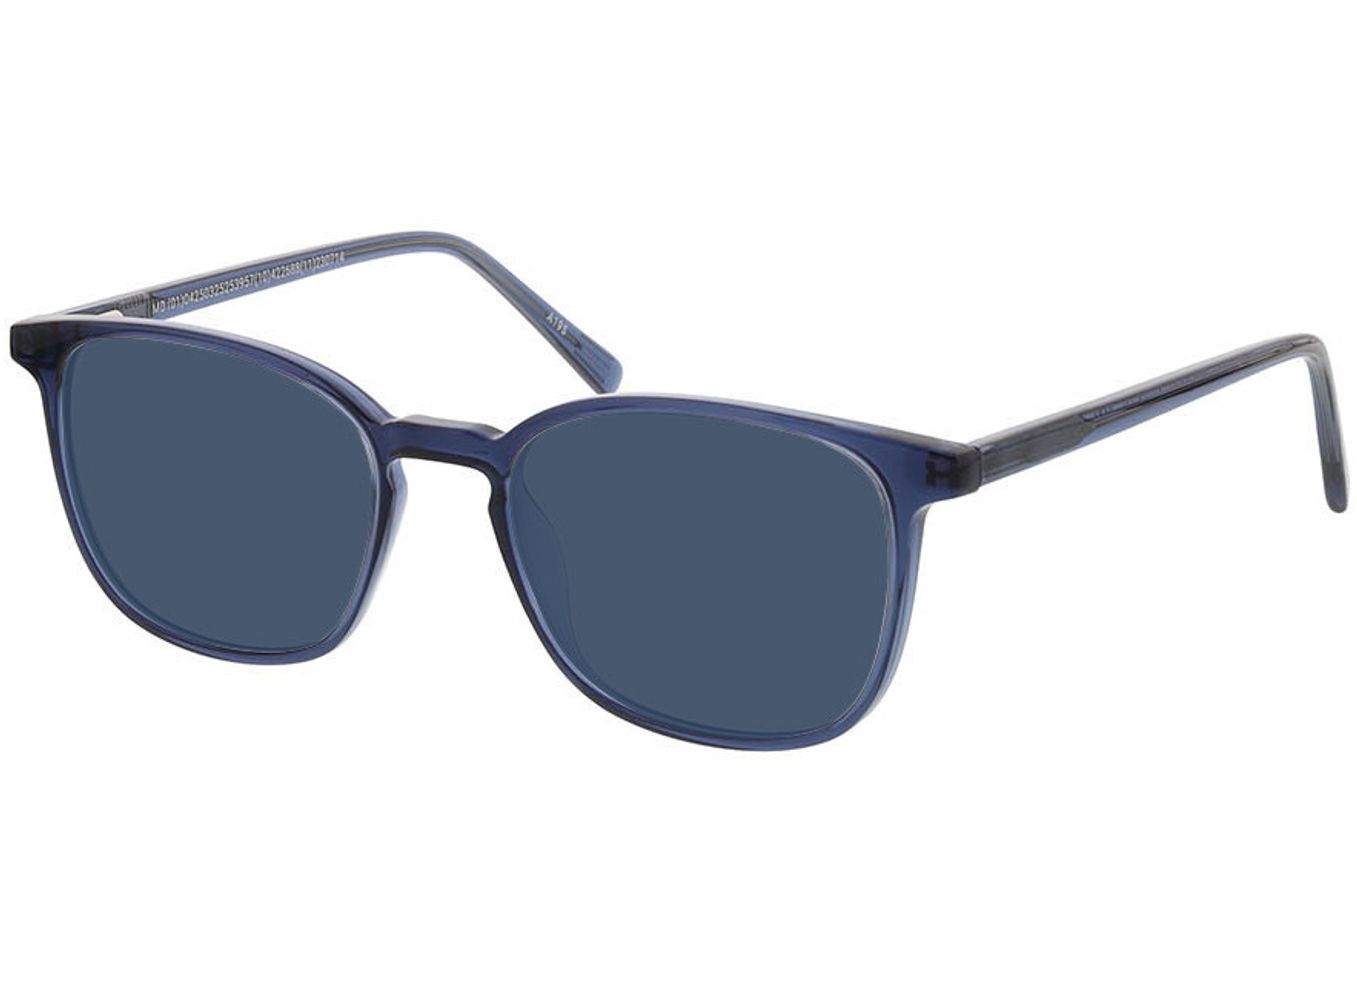 New Haven - blau Sonnenbrille ohne Sehstärke, Vollrand, Rechteckig von Brille24 Collection